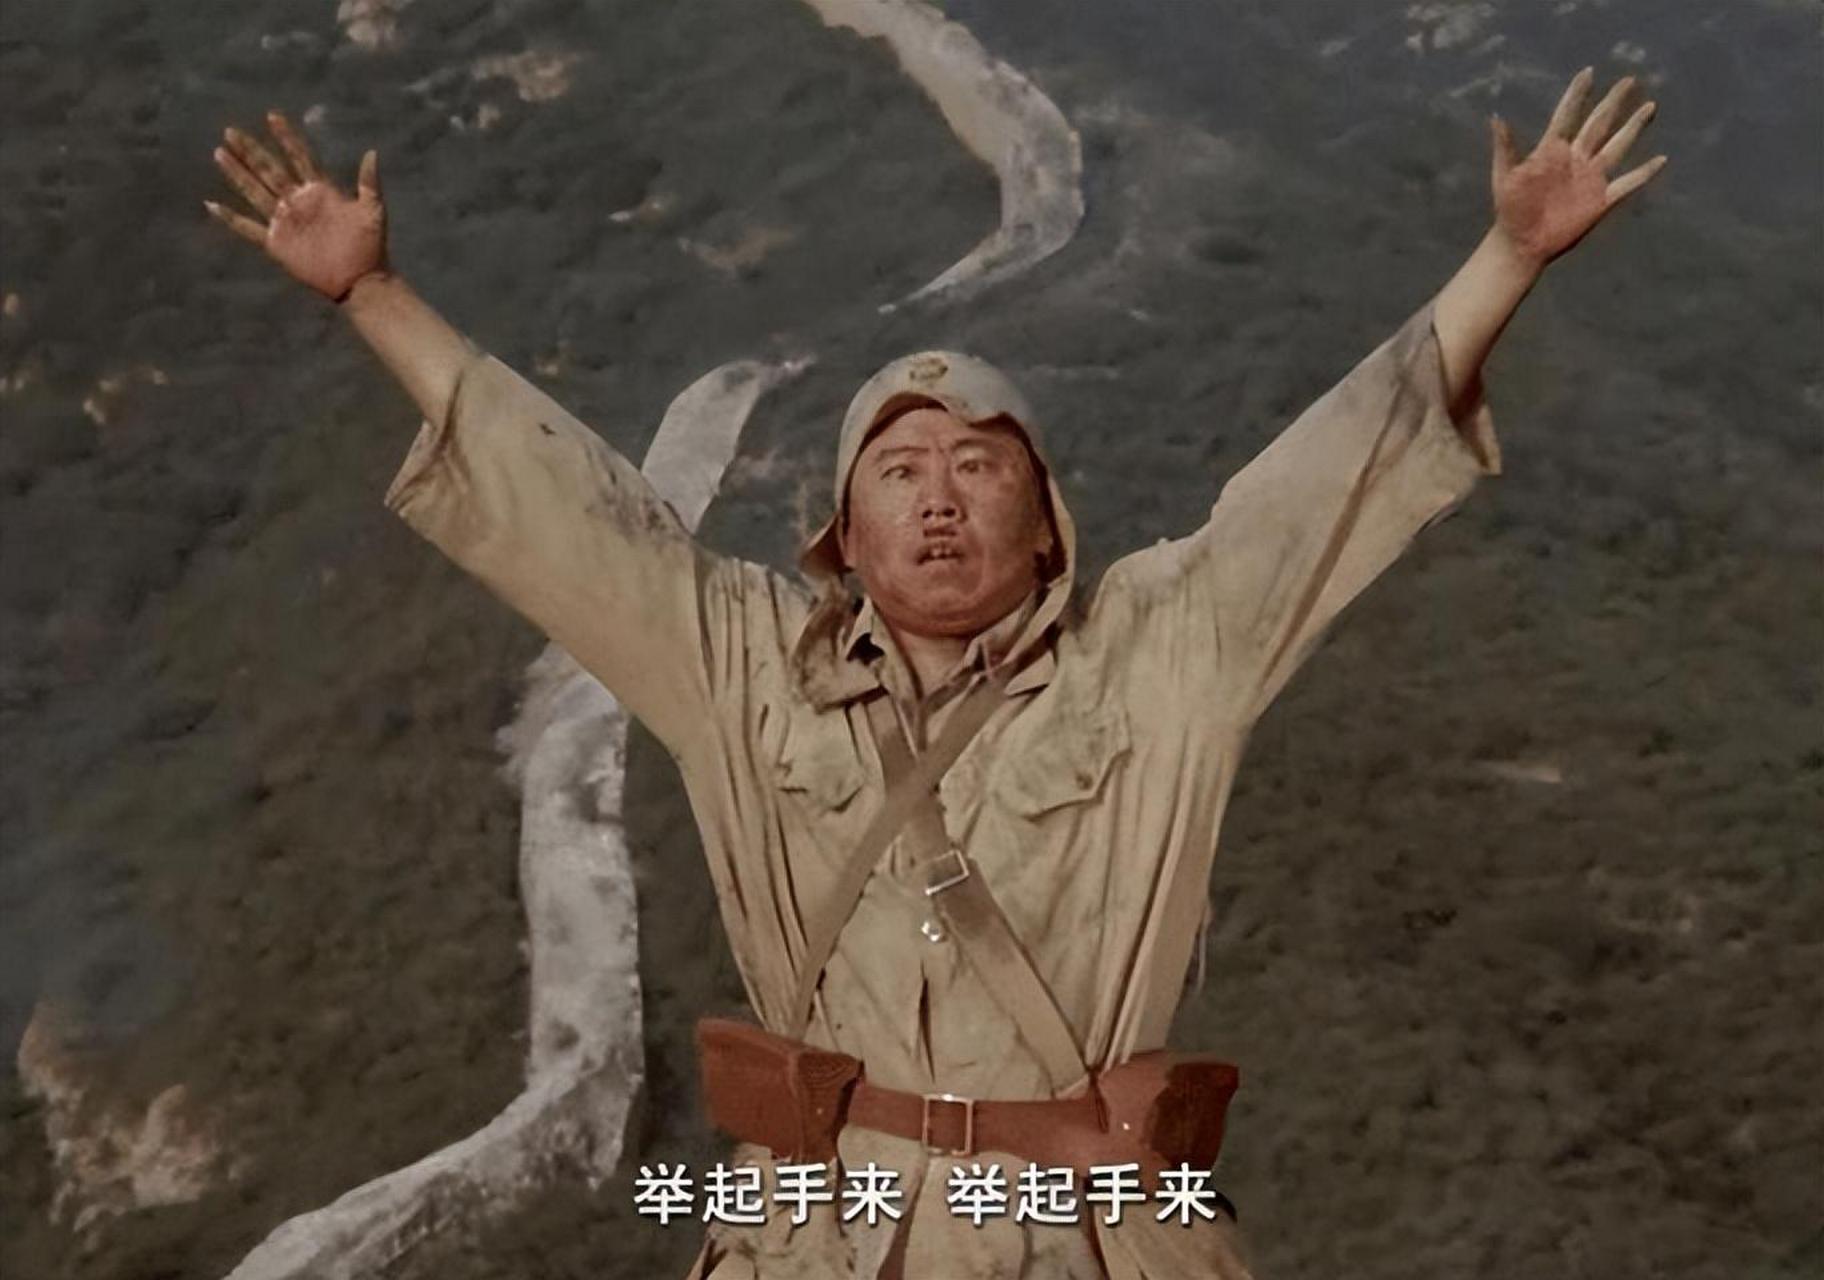 潘长江是中国内地著名的喜剧演员,但他的一些言行却让人们对他的评价